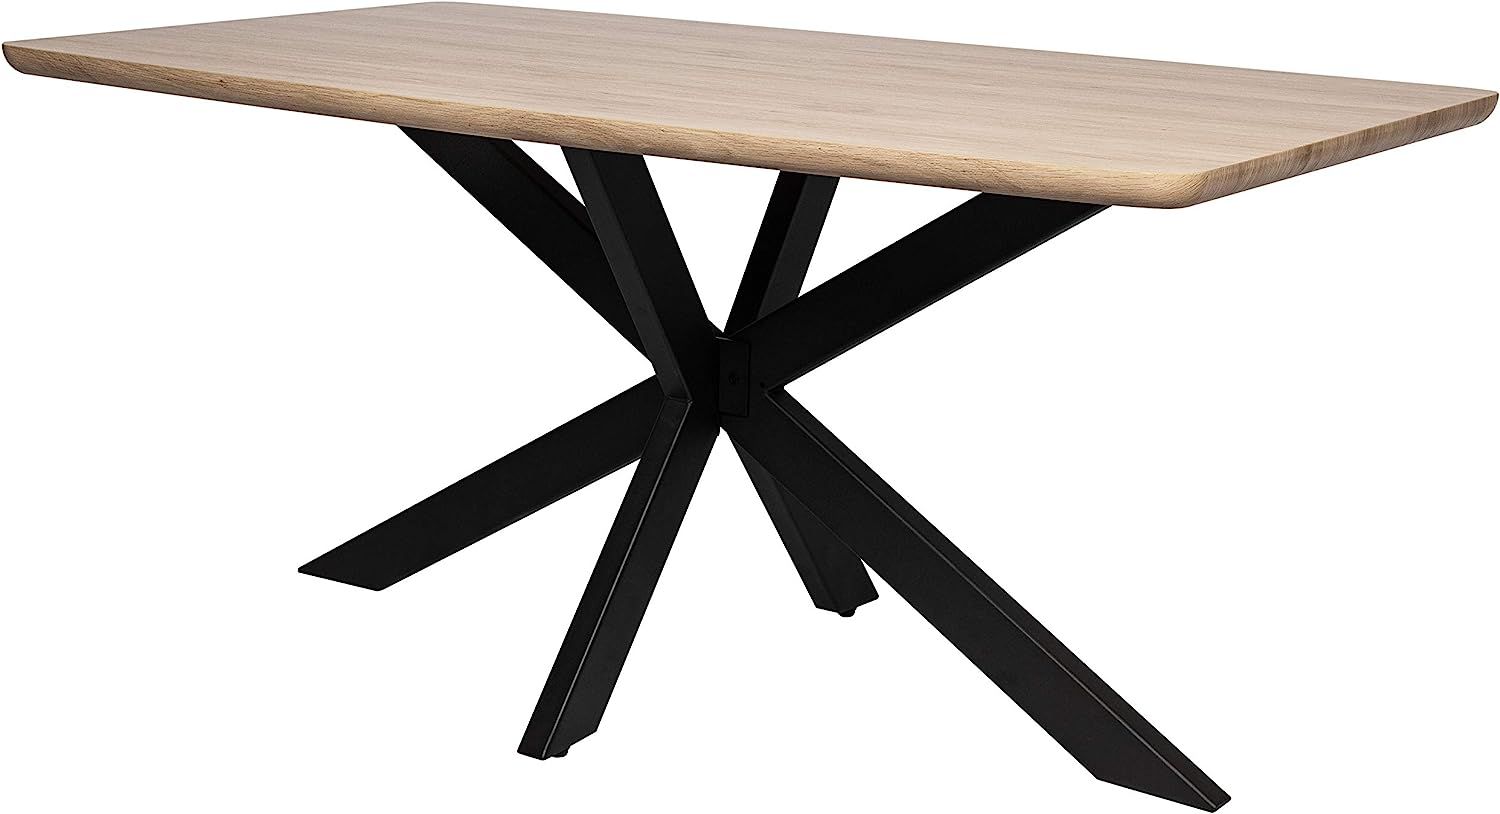 LeisureMod Ravenna 63" Rectangular Wood Dining Table with Geometric Base (Maple) | Amazon (US)